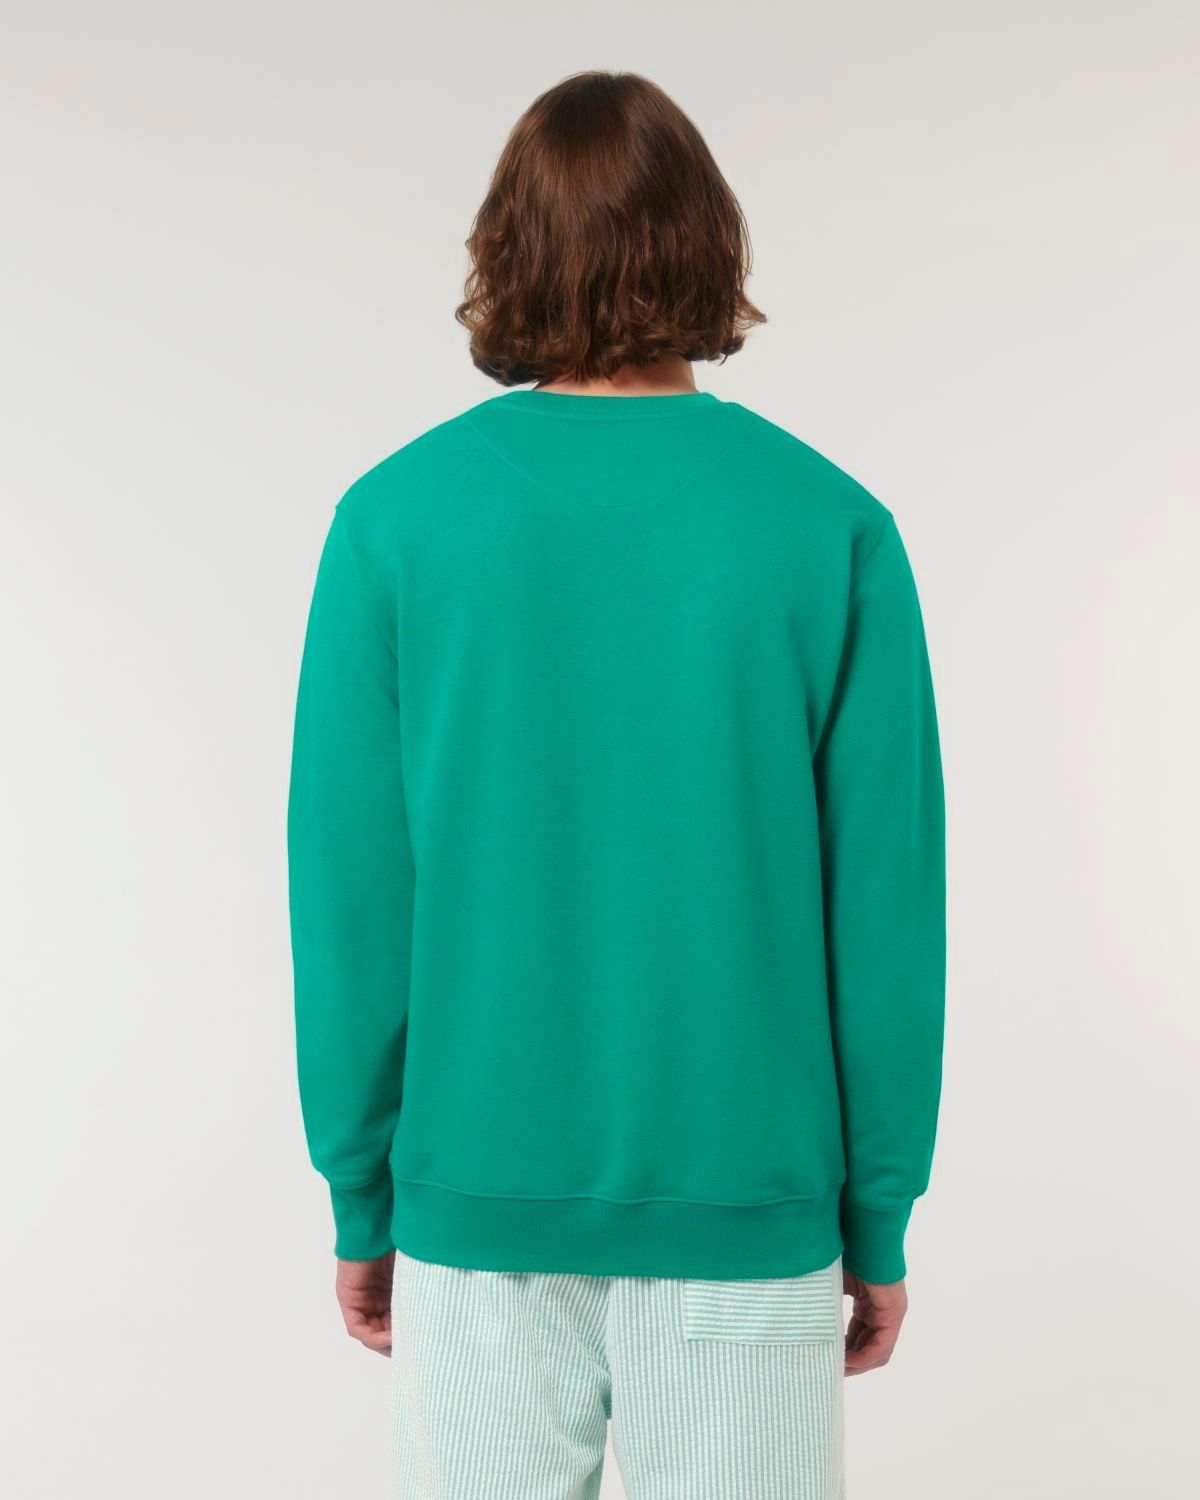 Herren Basic Sweatshirt "HOFF & THE GANG" Go Green